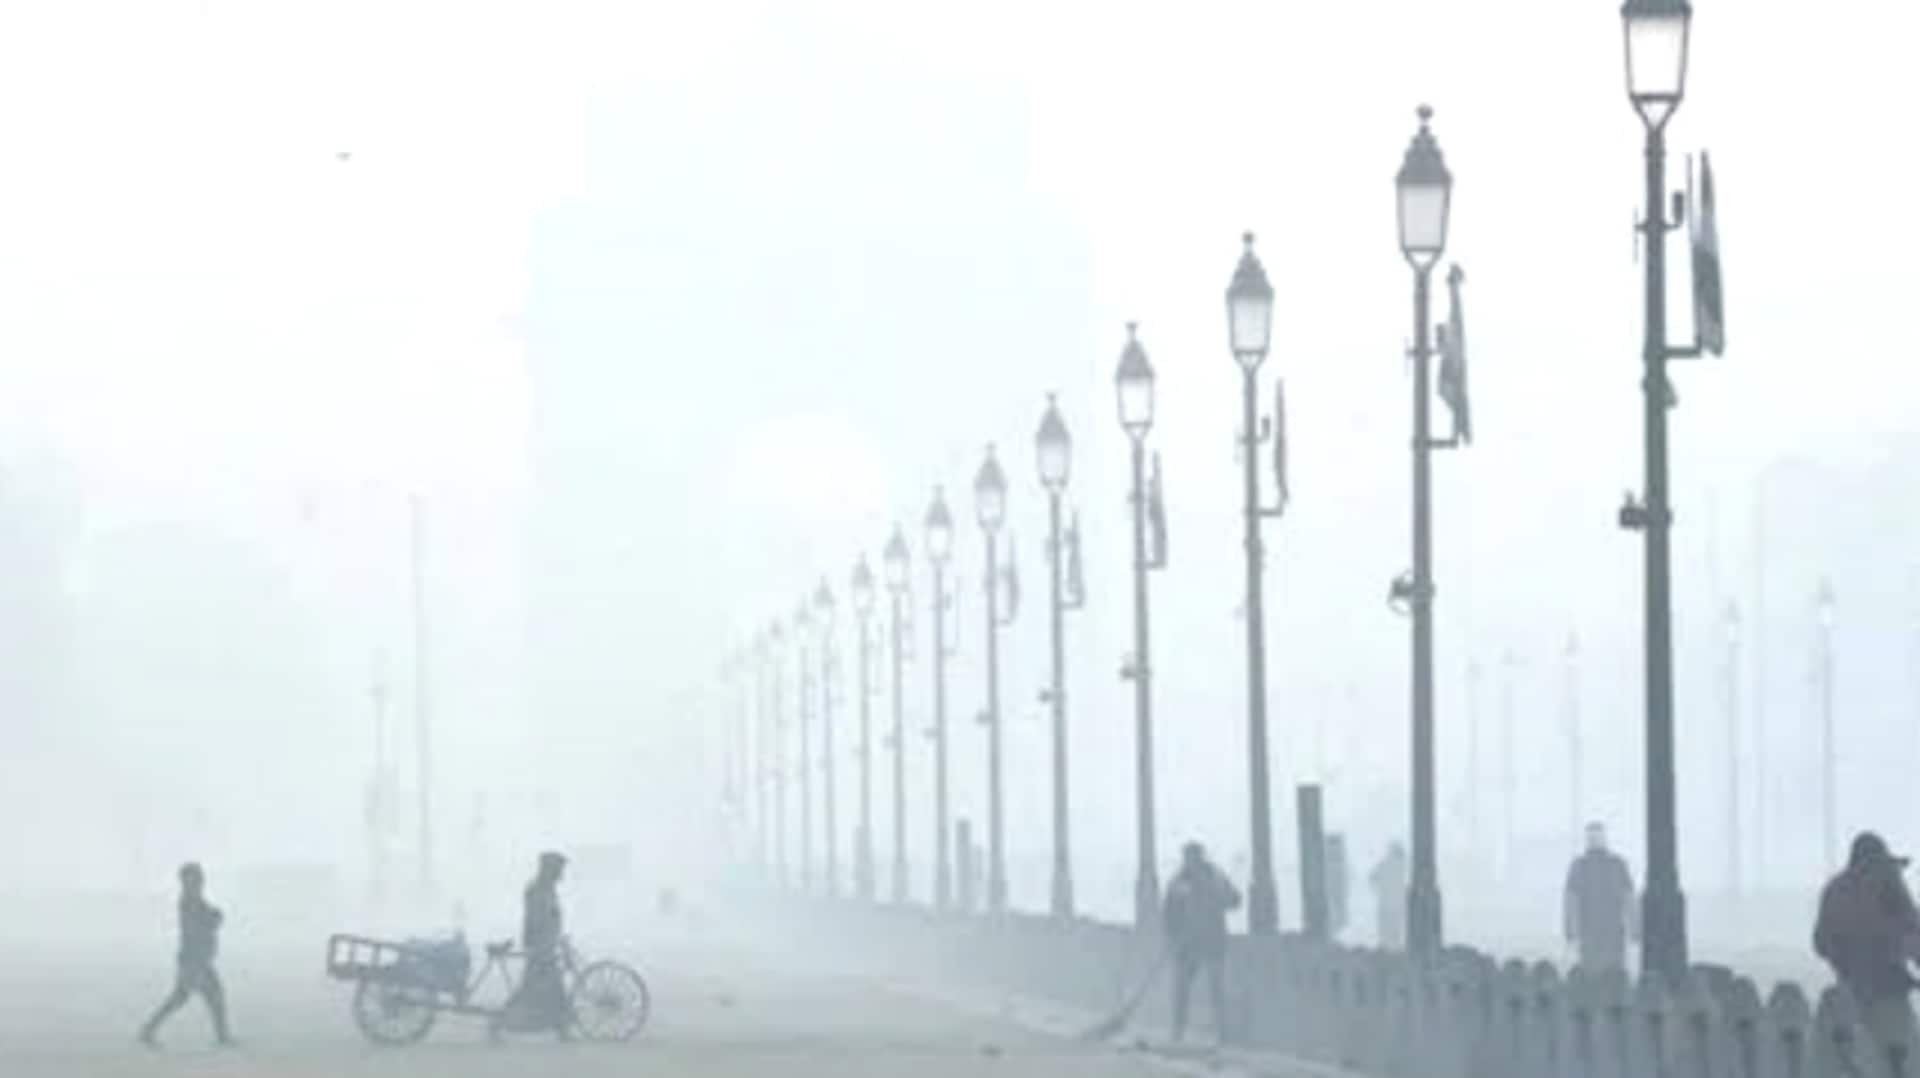 Delhi Fog : దిల్లీలో చలిపంజా.. బెంబెలెత్తుతున్న రాజధాని వాసులు.. తమిళనాడుకు భారీ వర్ష సూచన